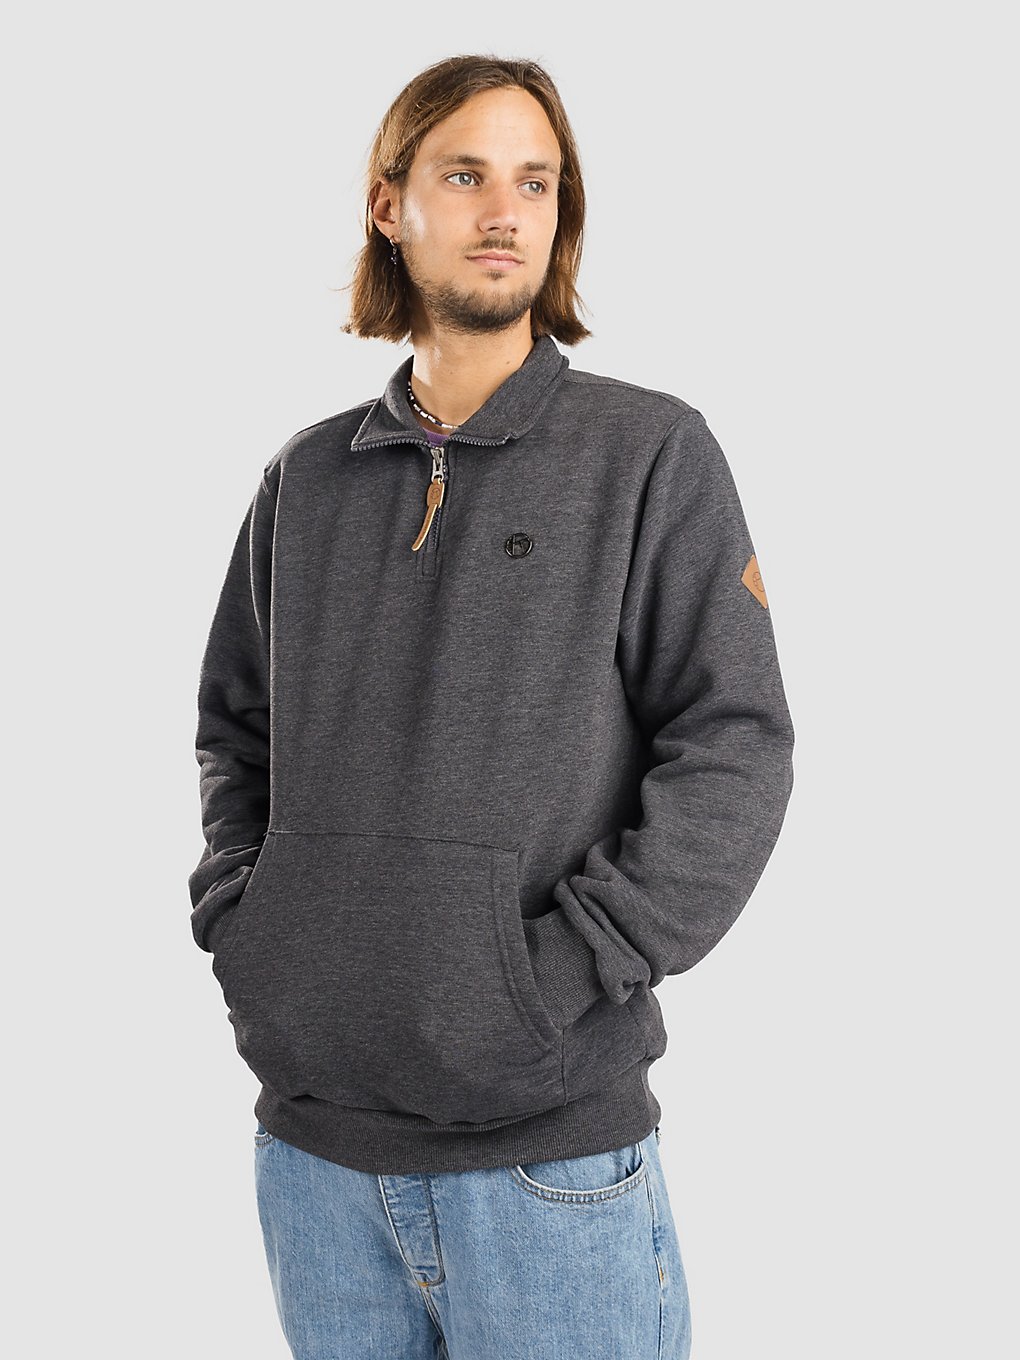 Kazane Soren Sweater charcoal heather kaufen